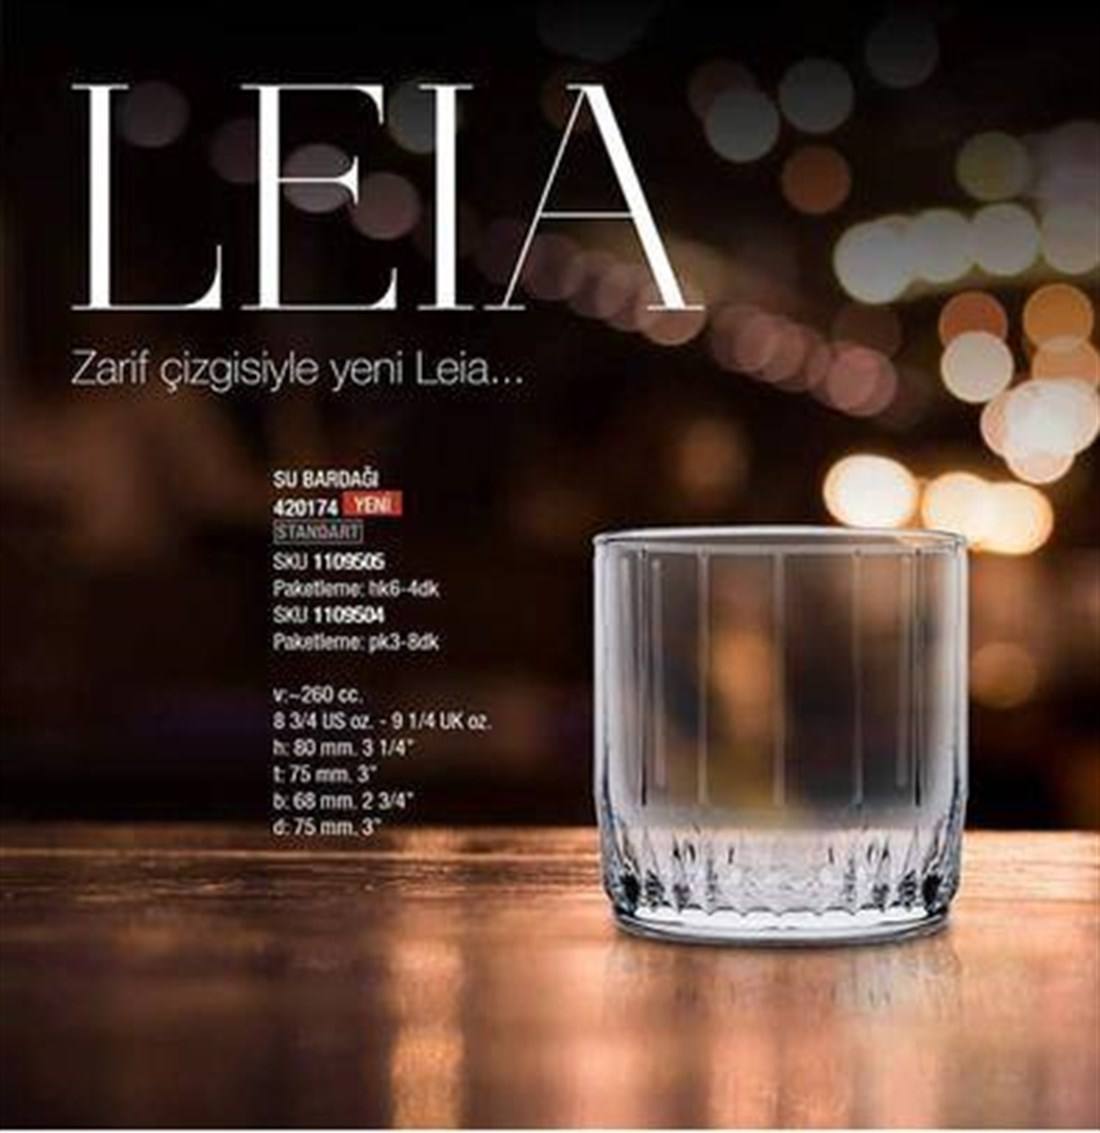 نیم لیوان مدل leia پاشاباغچه ترکیه